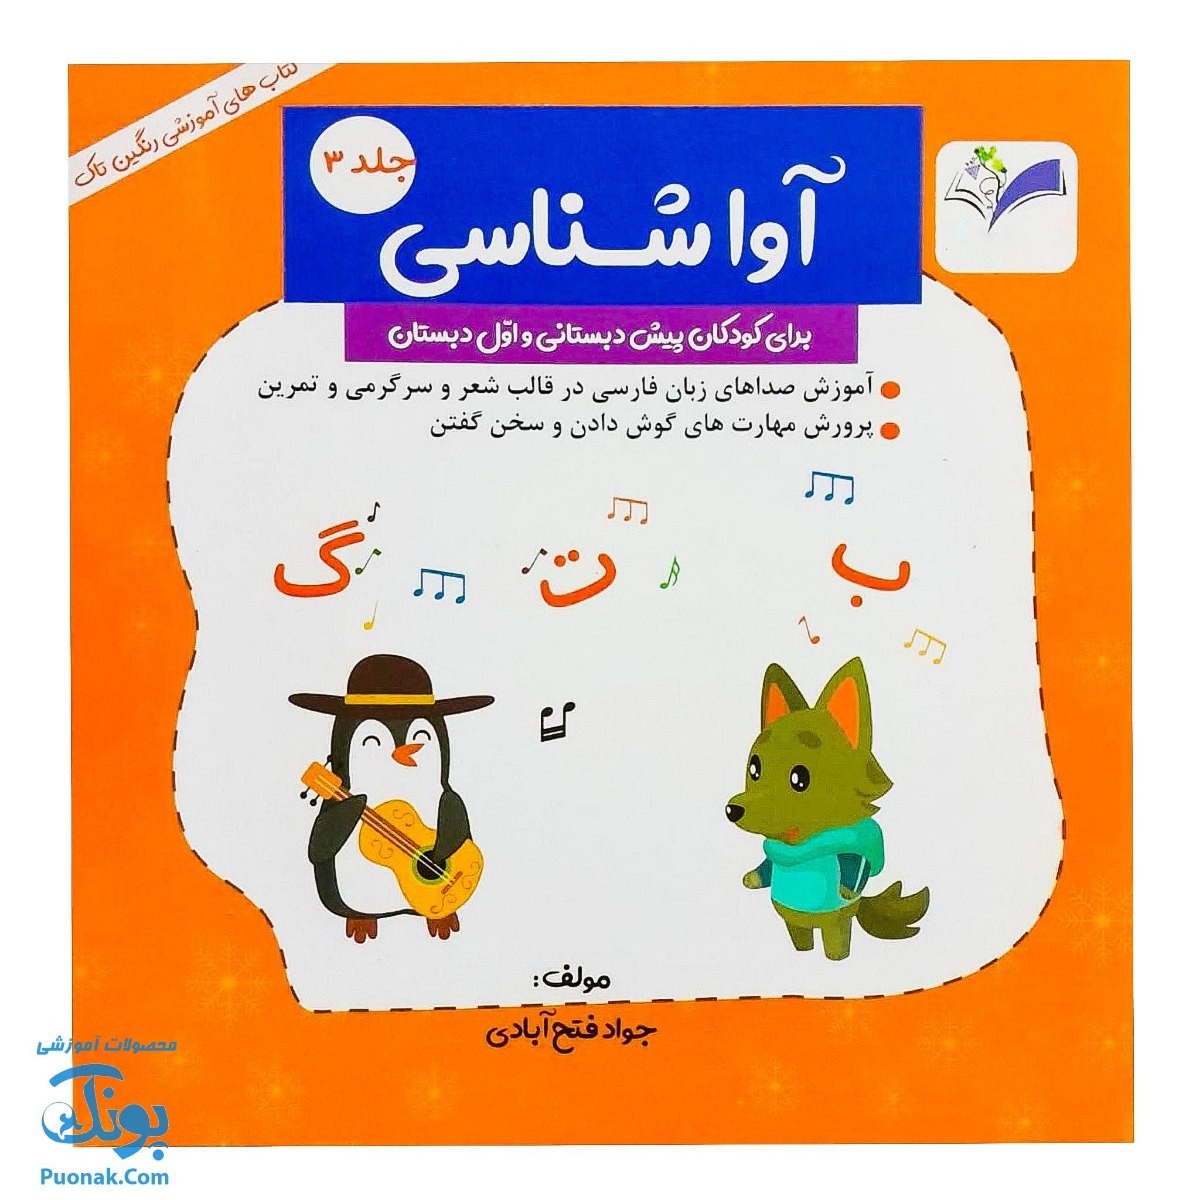 کتاب آموزش آوا شناسی ۳ برای کودکان پیش دبستانی و اول دبستان نشر رنگین تاک - پونک